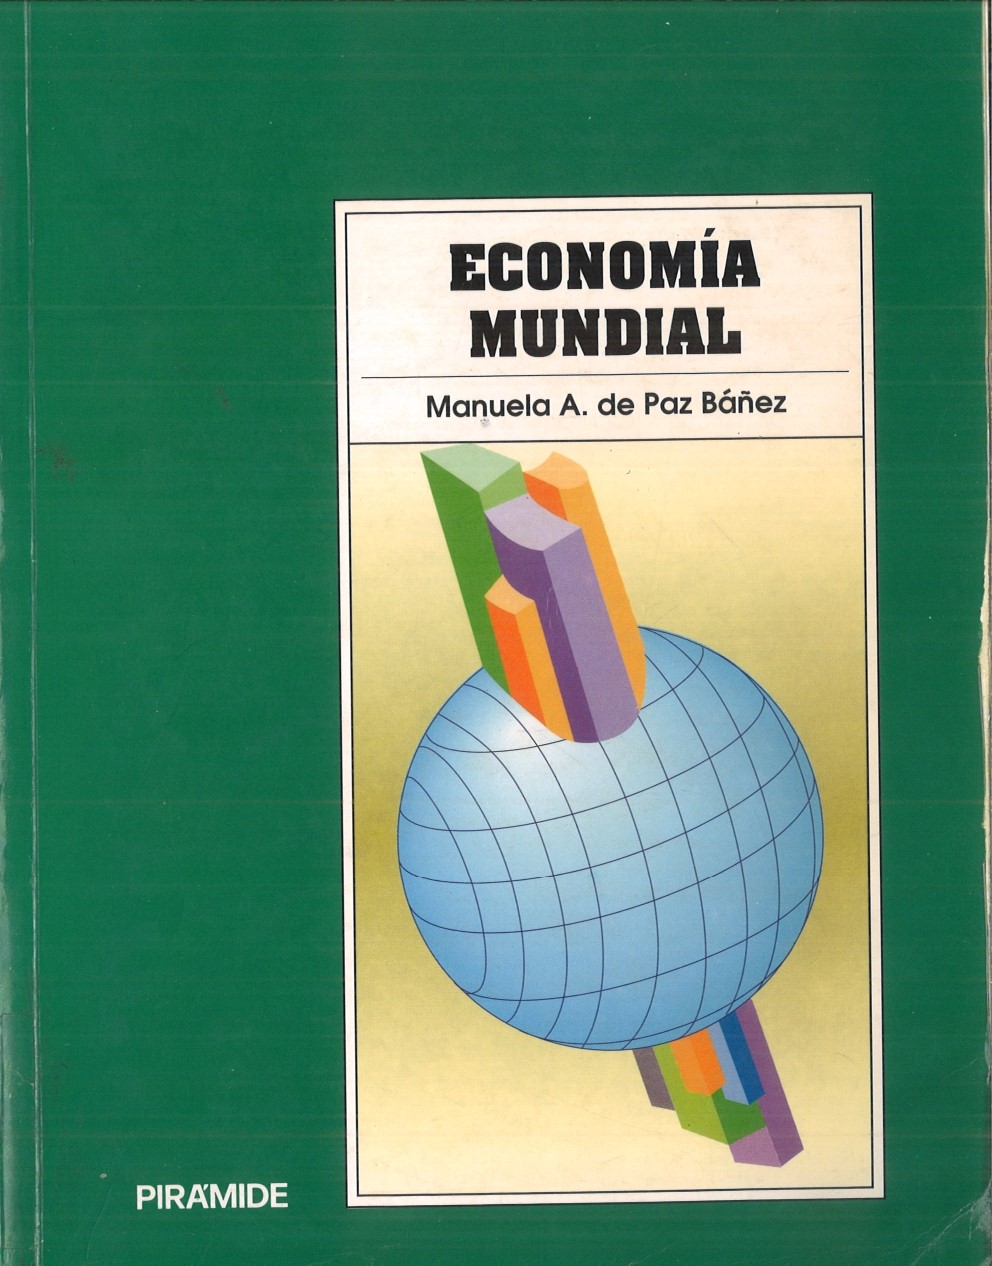 Imagen de portada del libro Economía mundial